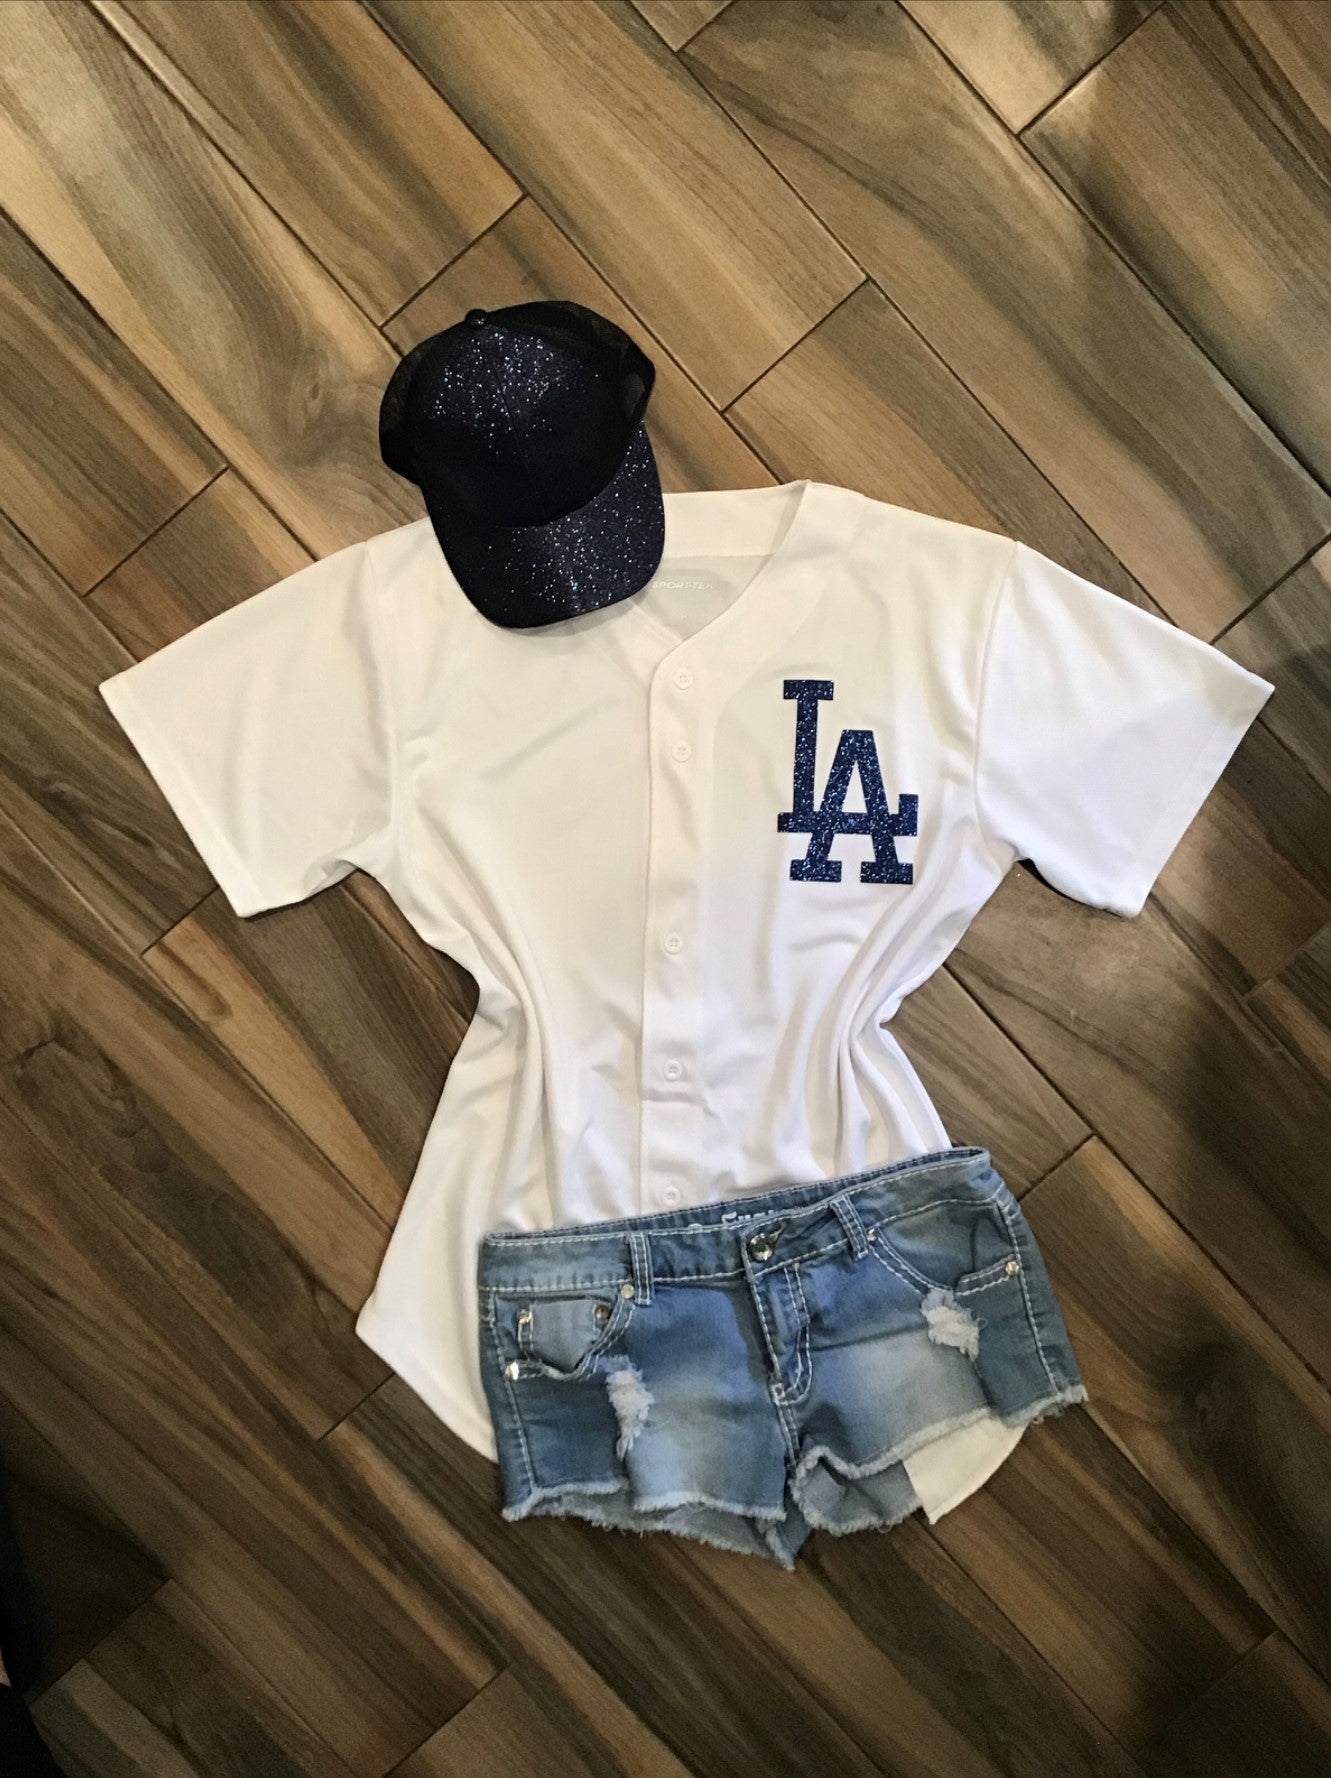 Lulu Grace Designs White La Dodgers Inspired Baseball Jersey: Baseball Fan Gear & Apparel for Women XL / Ladies V-Neck Tee